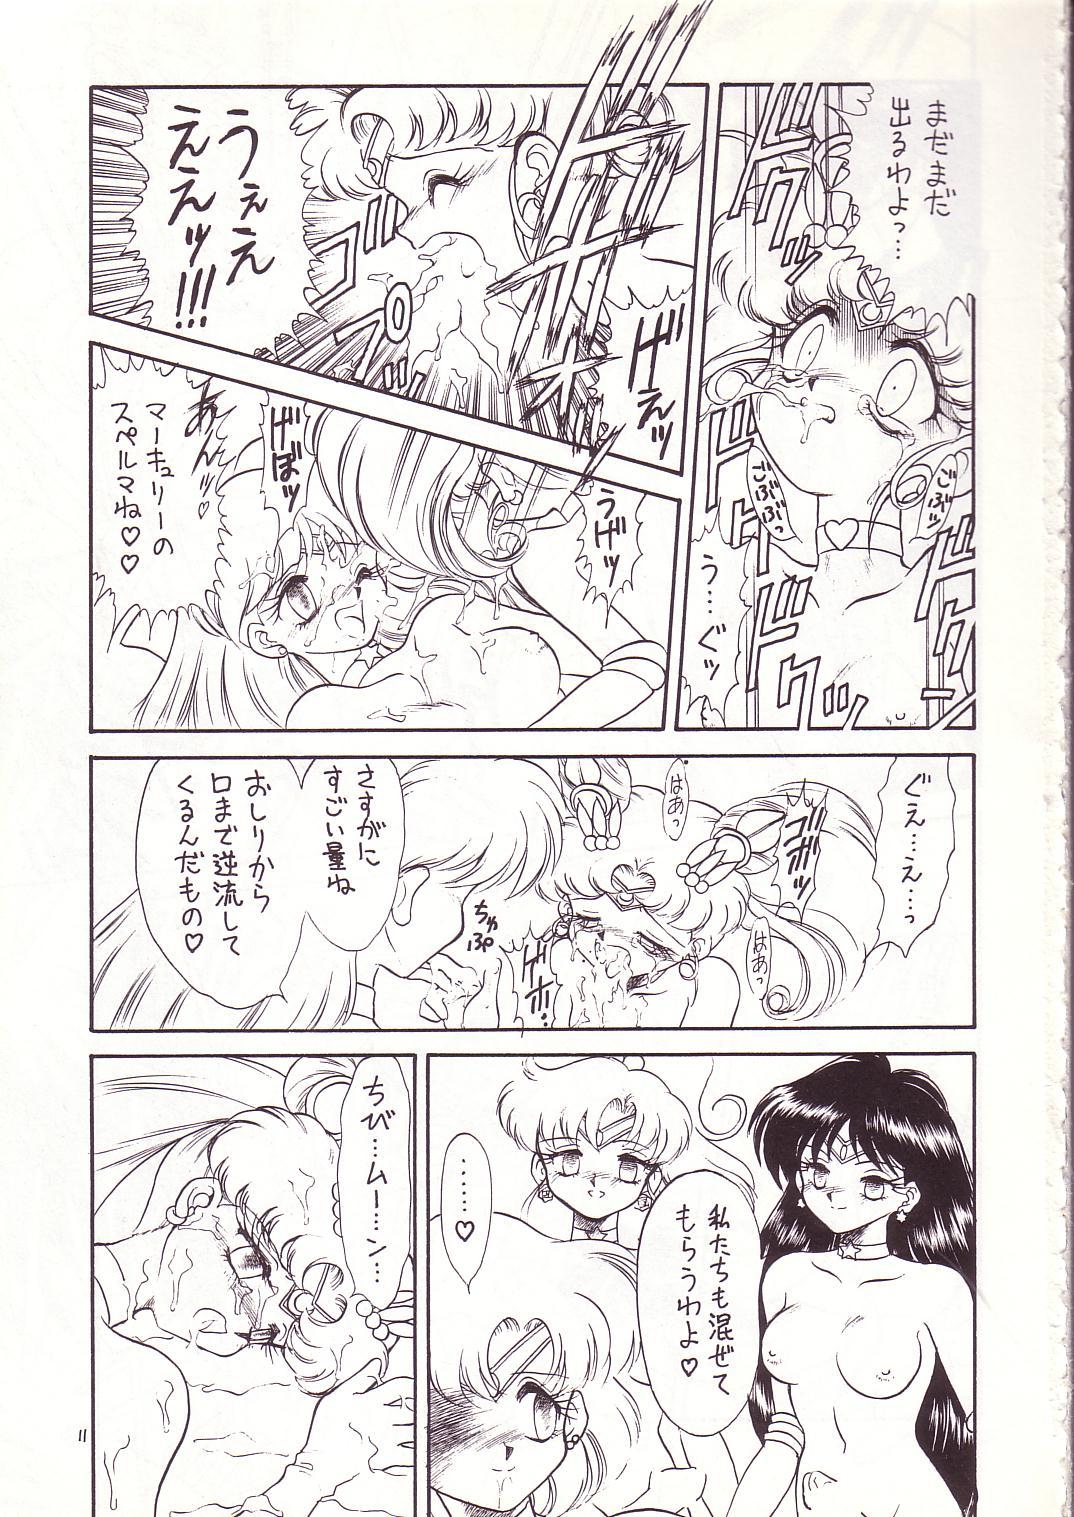 Camgirls Lolikko LOVE 4 - Sailor moon Akazukin cha cha Saint tail Lovers - Page 10